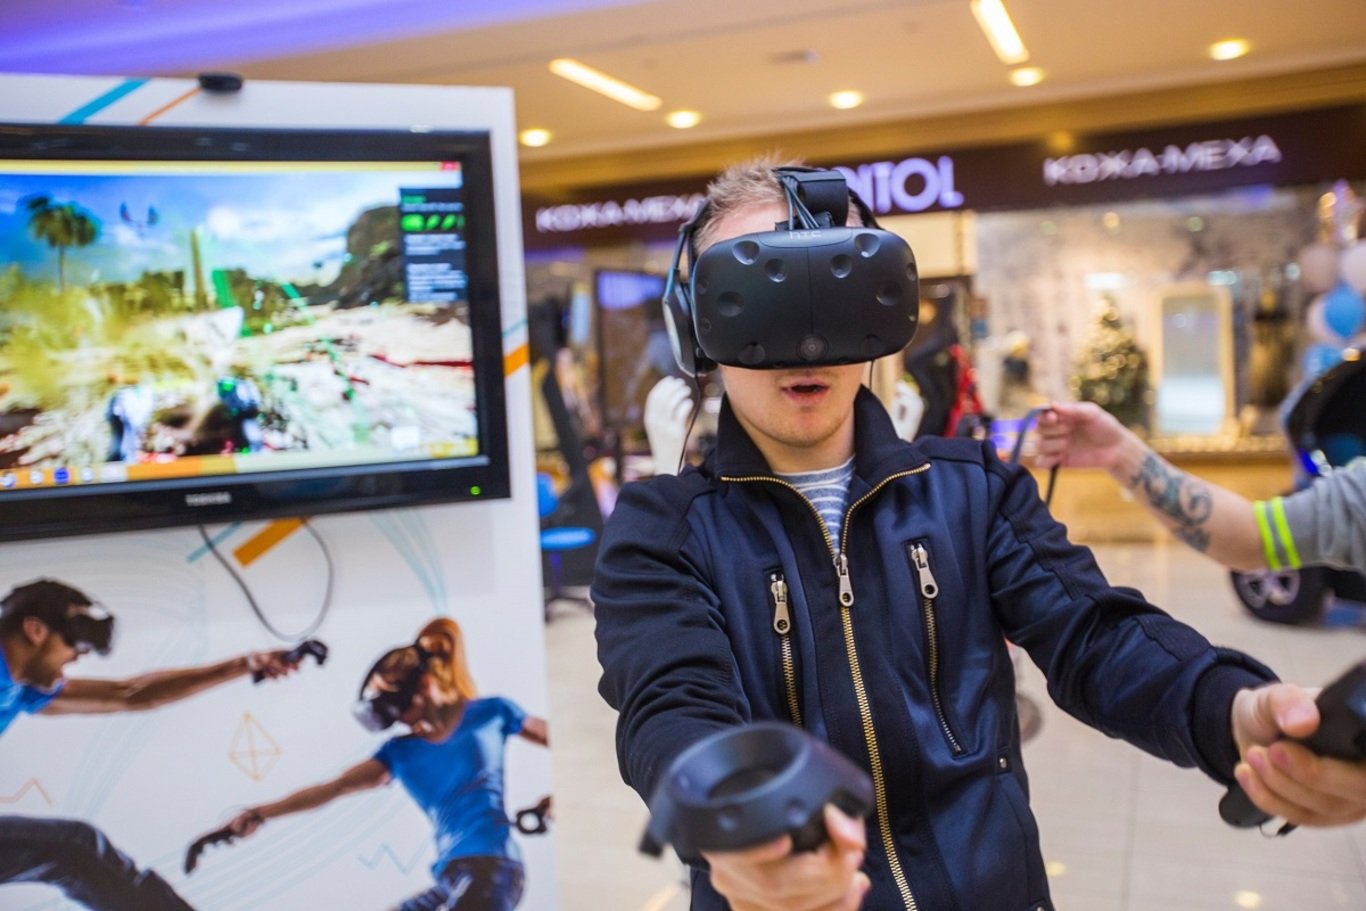 Виртуальная реальность развлечение. Виртуальная реальность в развлечениях. Аттракцион очки виртуальной реальности. Виртуальная реальность в торговом центре. VR развлечения.